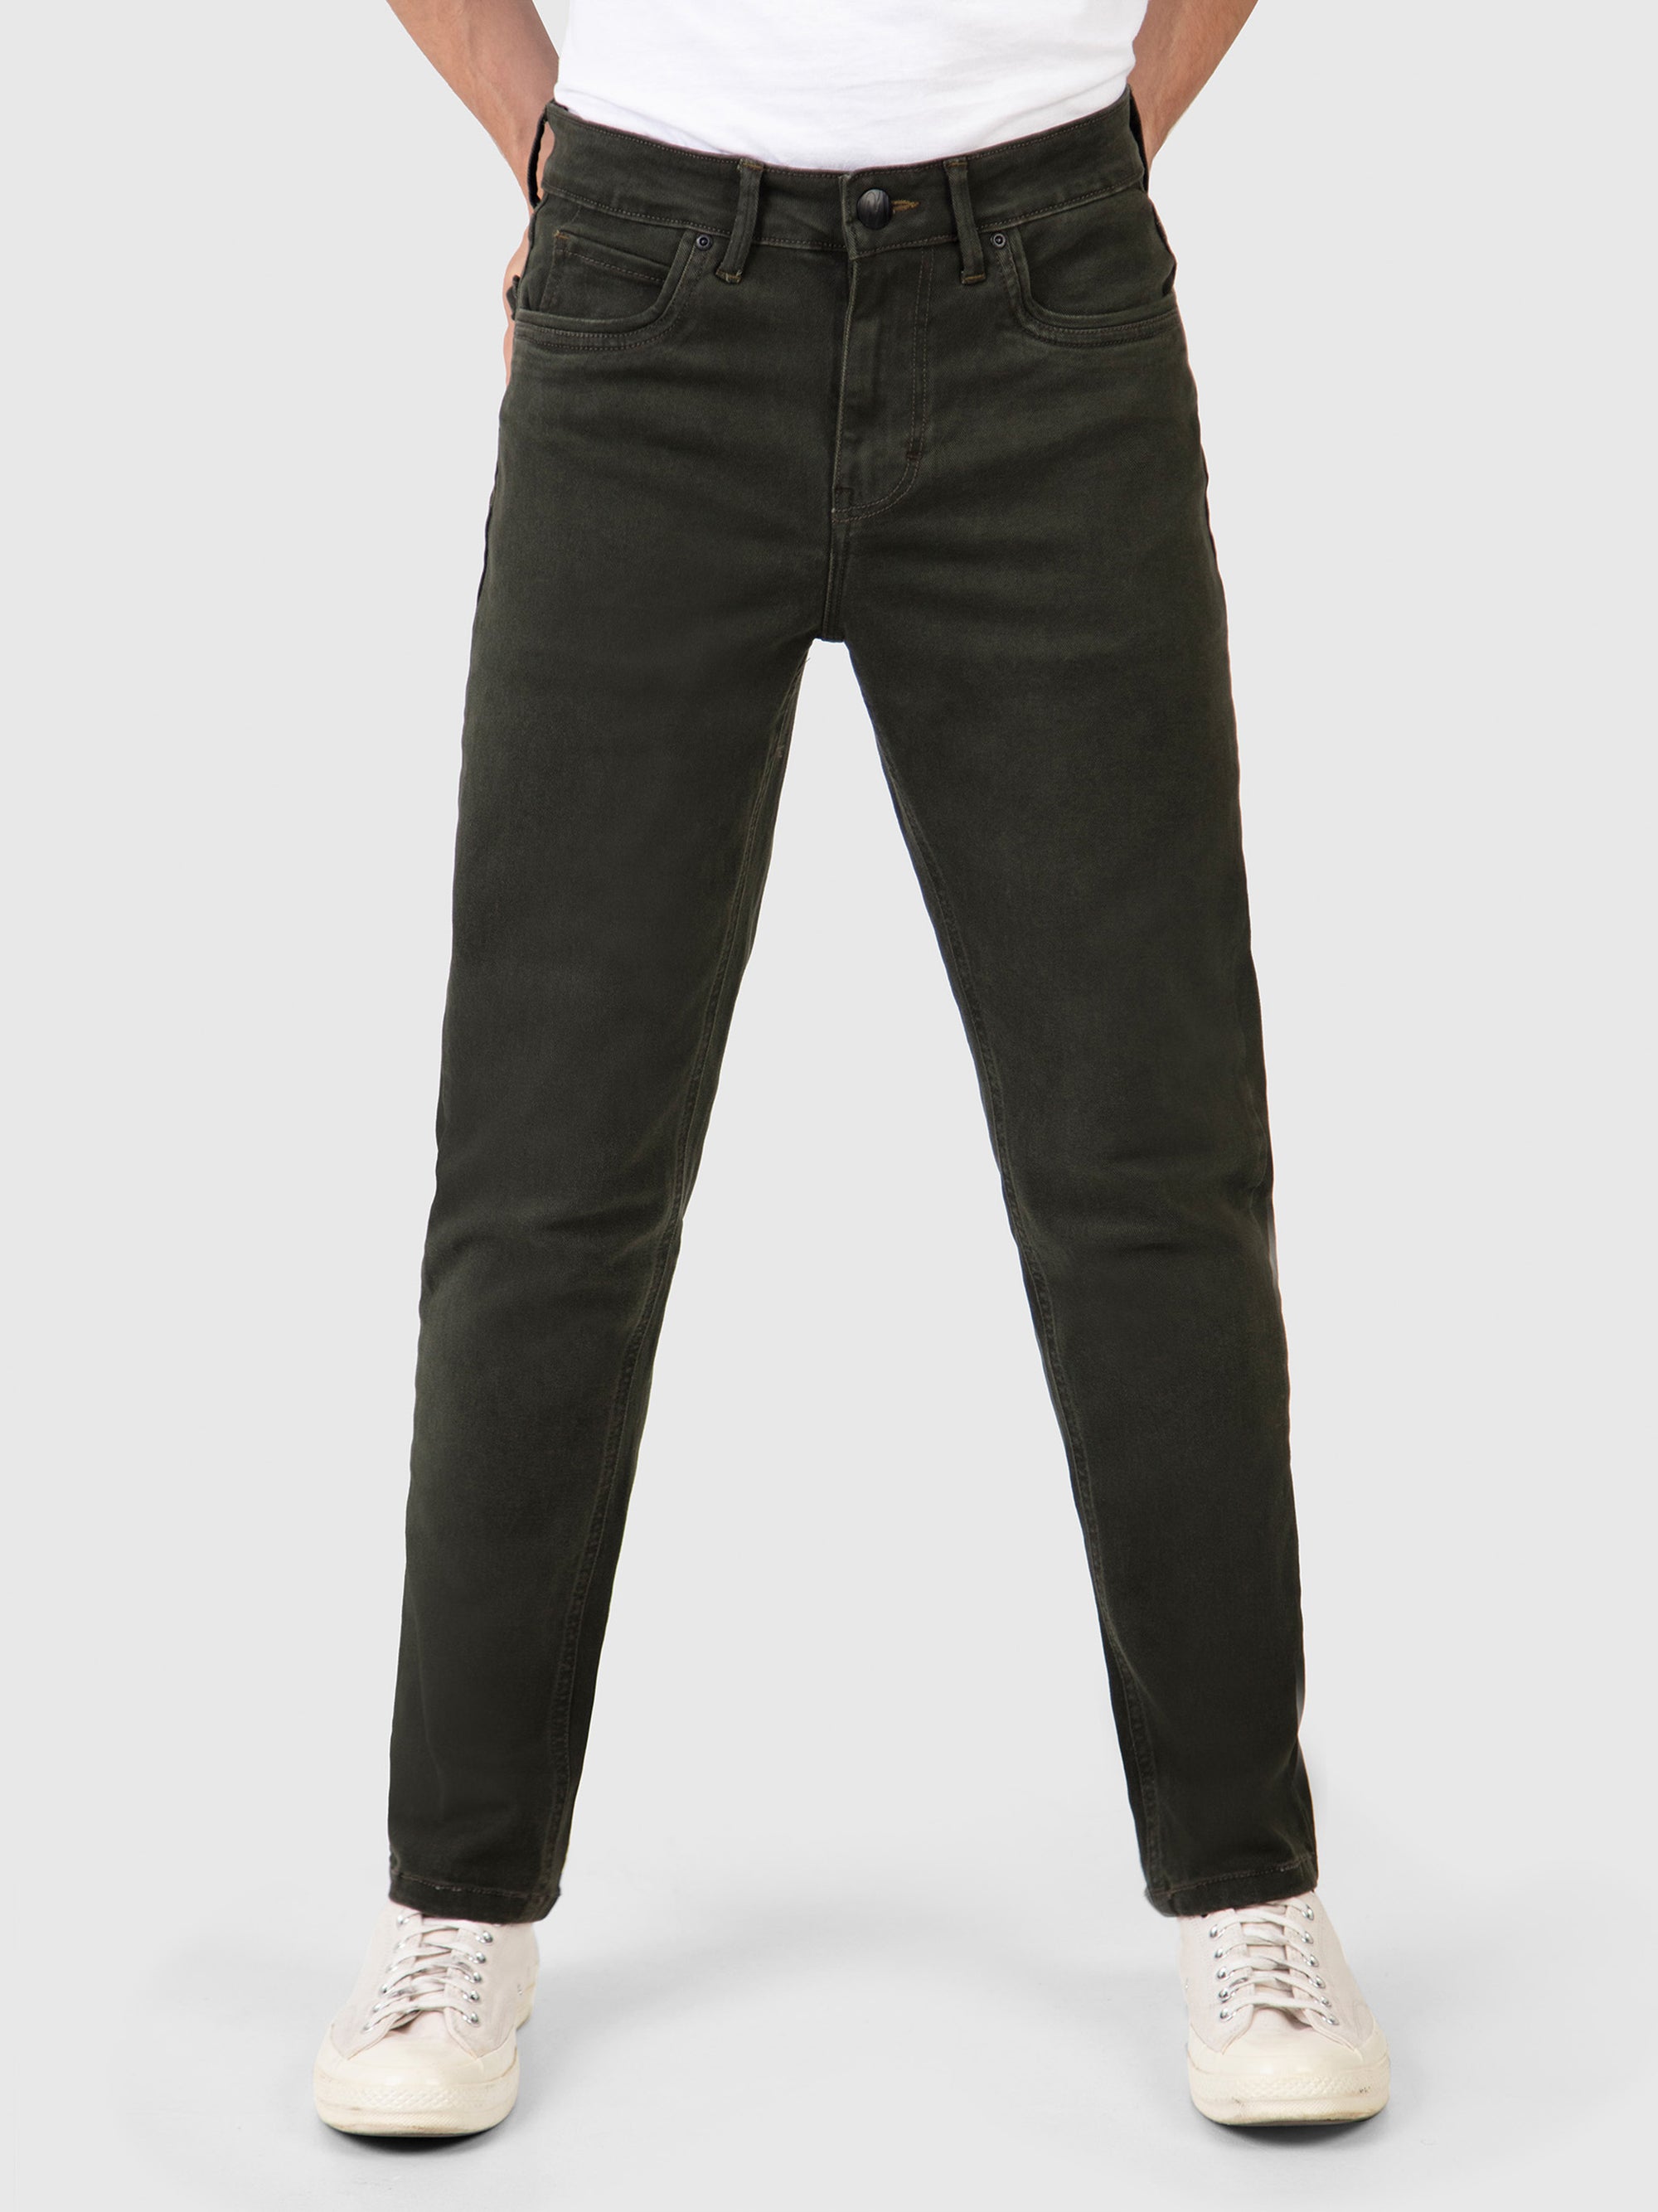 Slim Fit Mid Stretch Hawker Khaki Denim Jeans